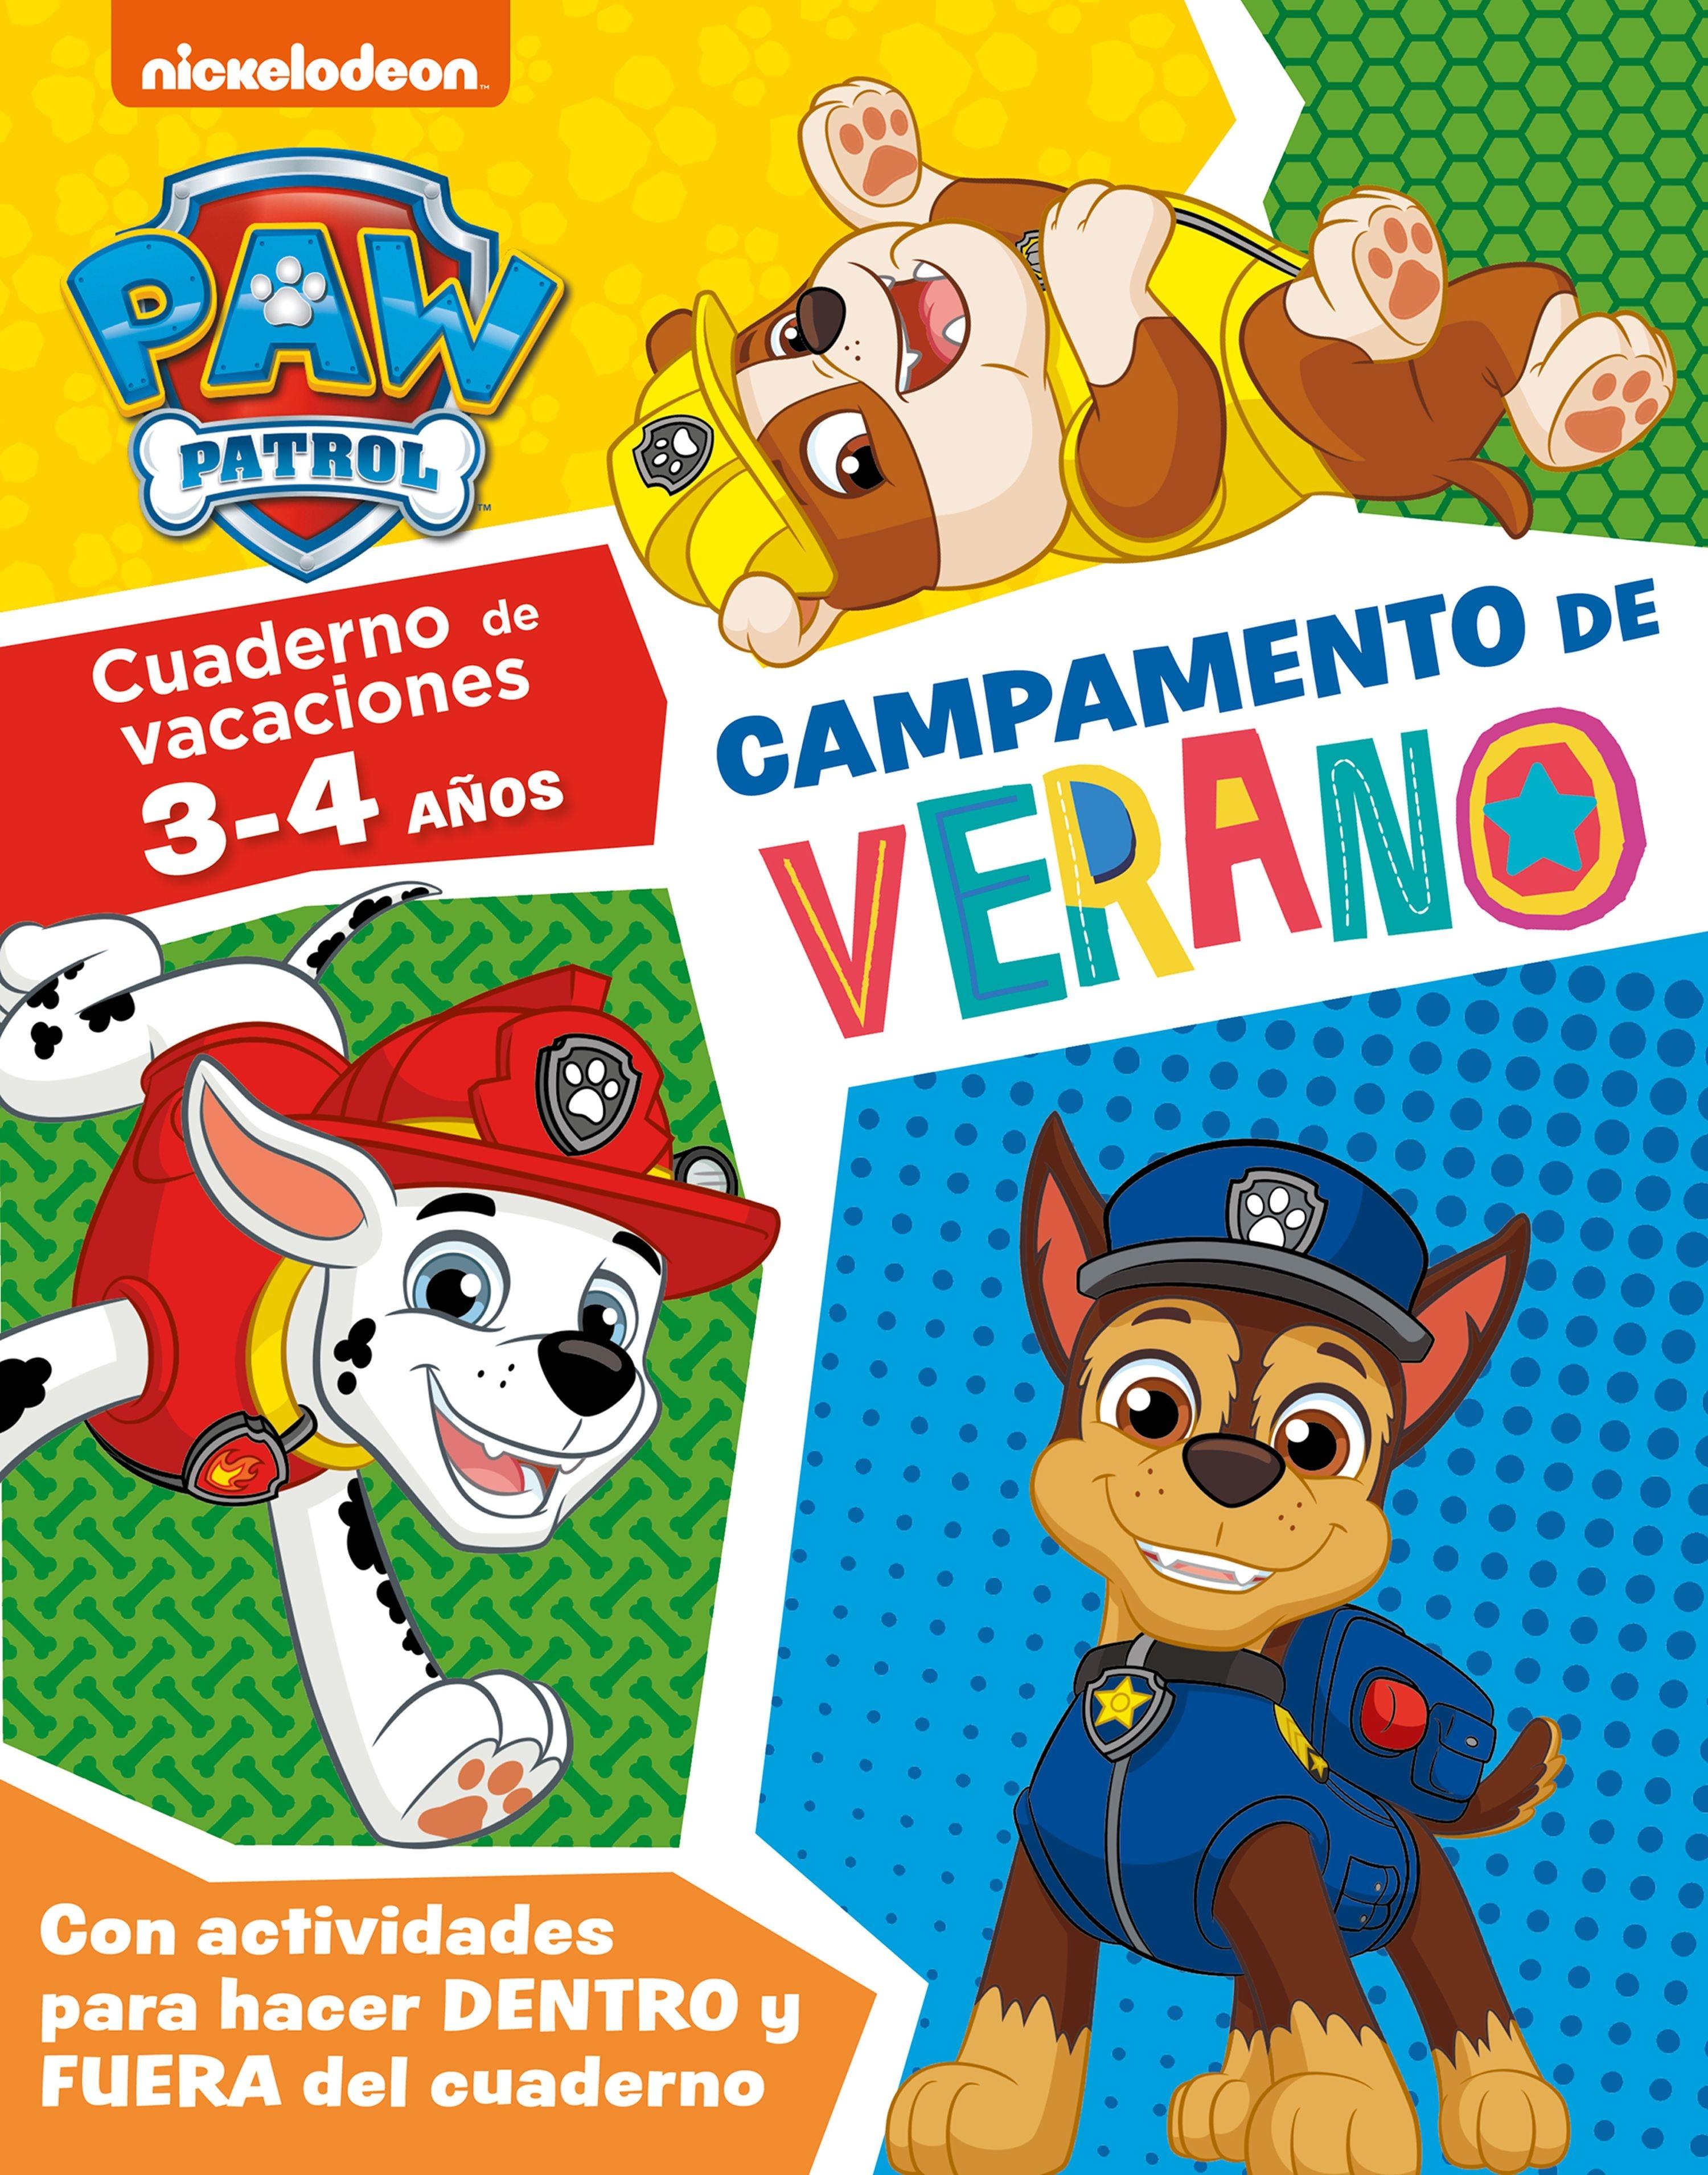 Campamento de verano con la Patrulla Canina 3-4 años "Cuaderno de vacaciones (3-4 años)". 